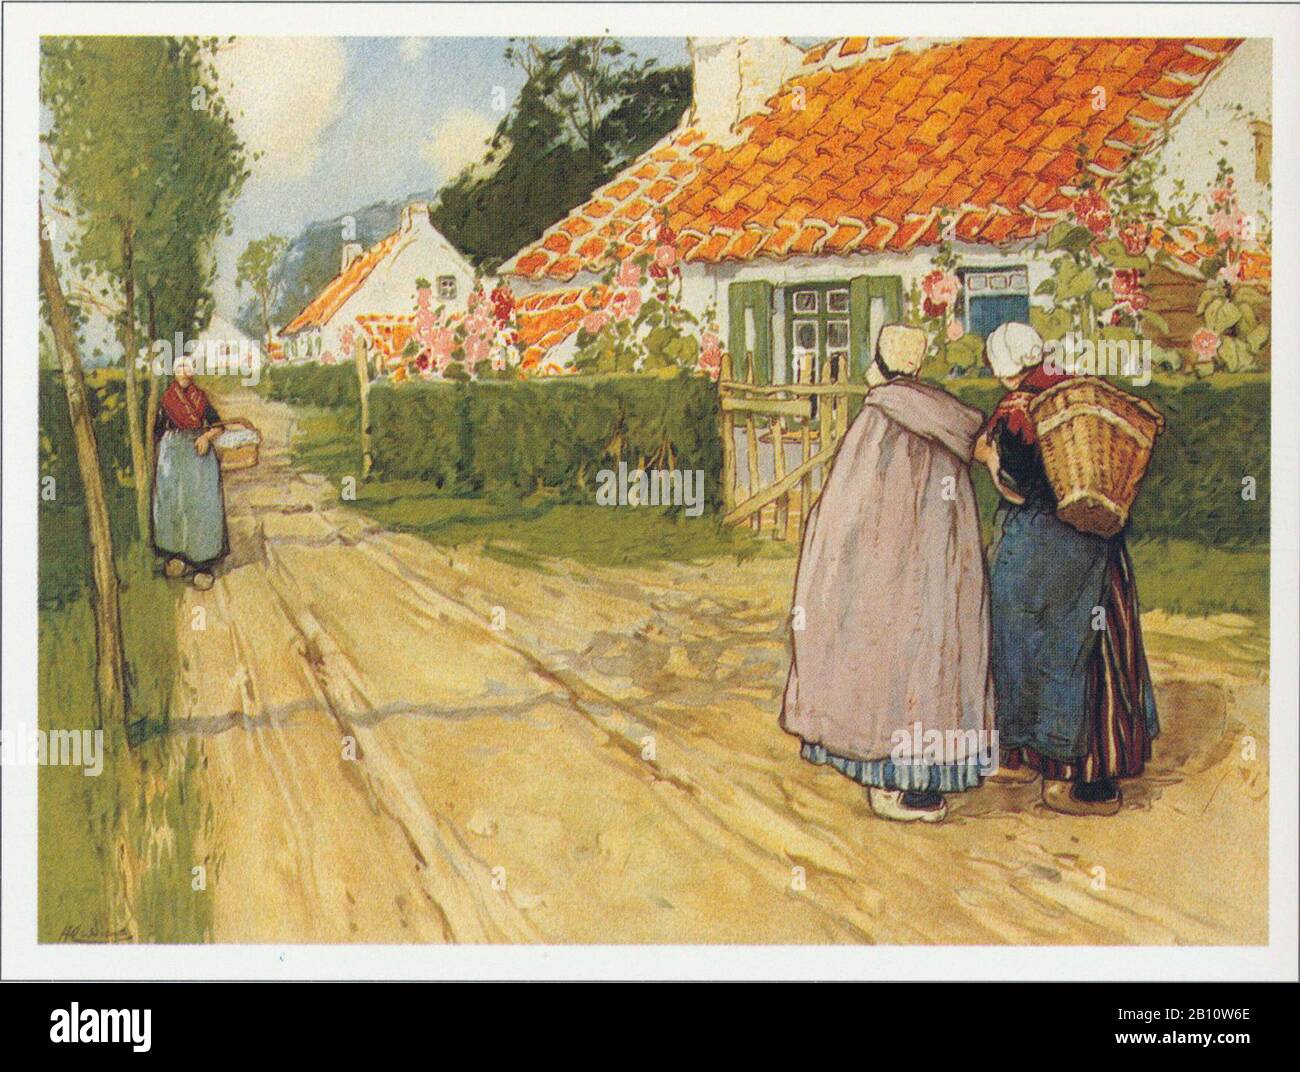 Landweg betuwe - Ilustración de Henri Casuers (1858 - 1944) Foto de stock